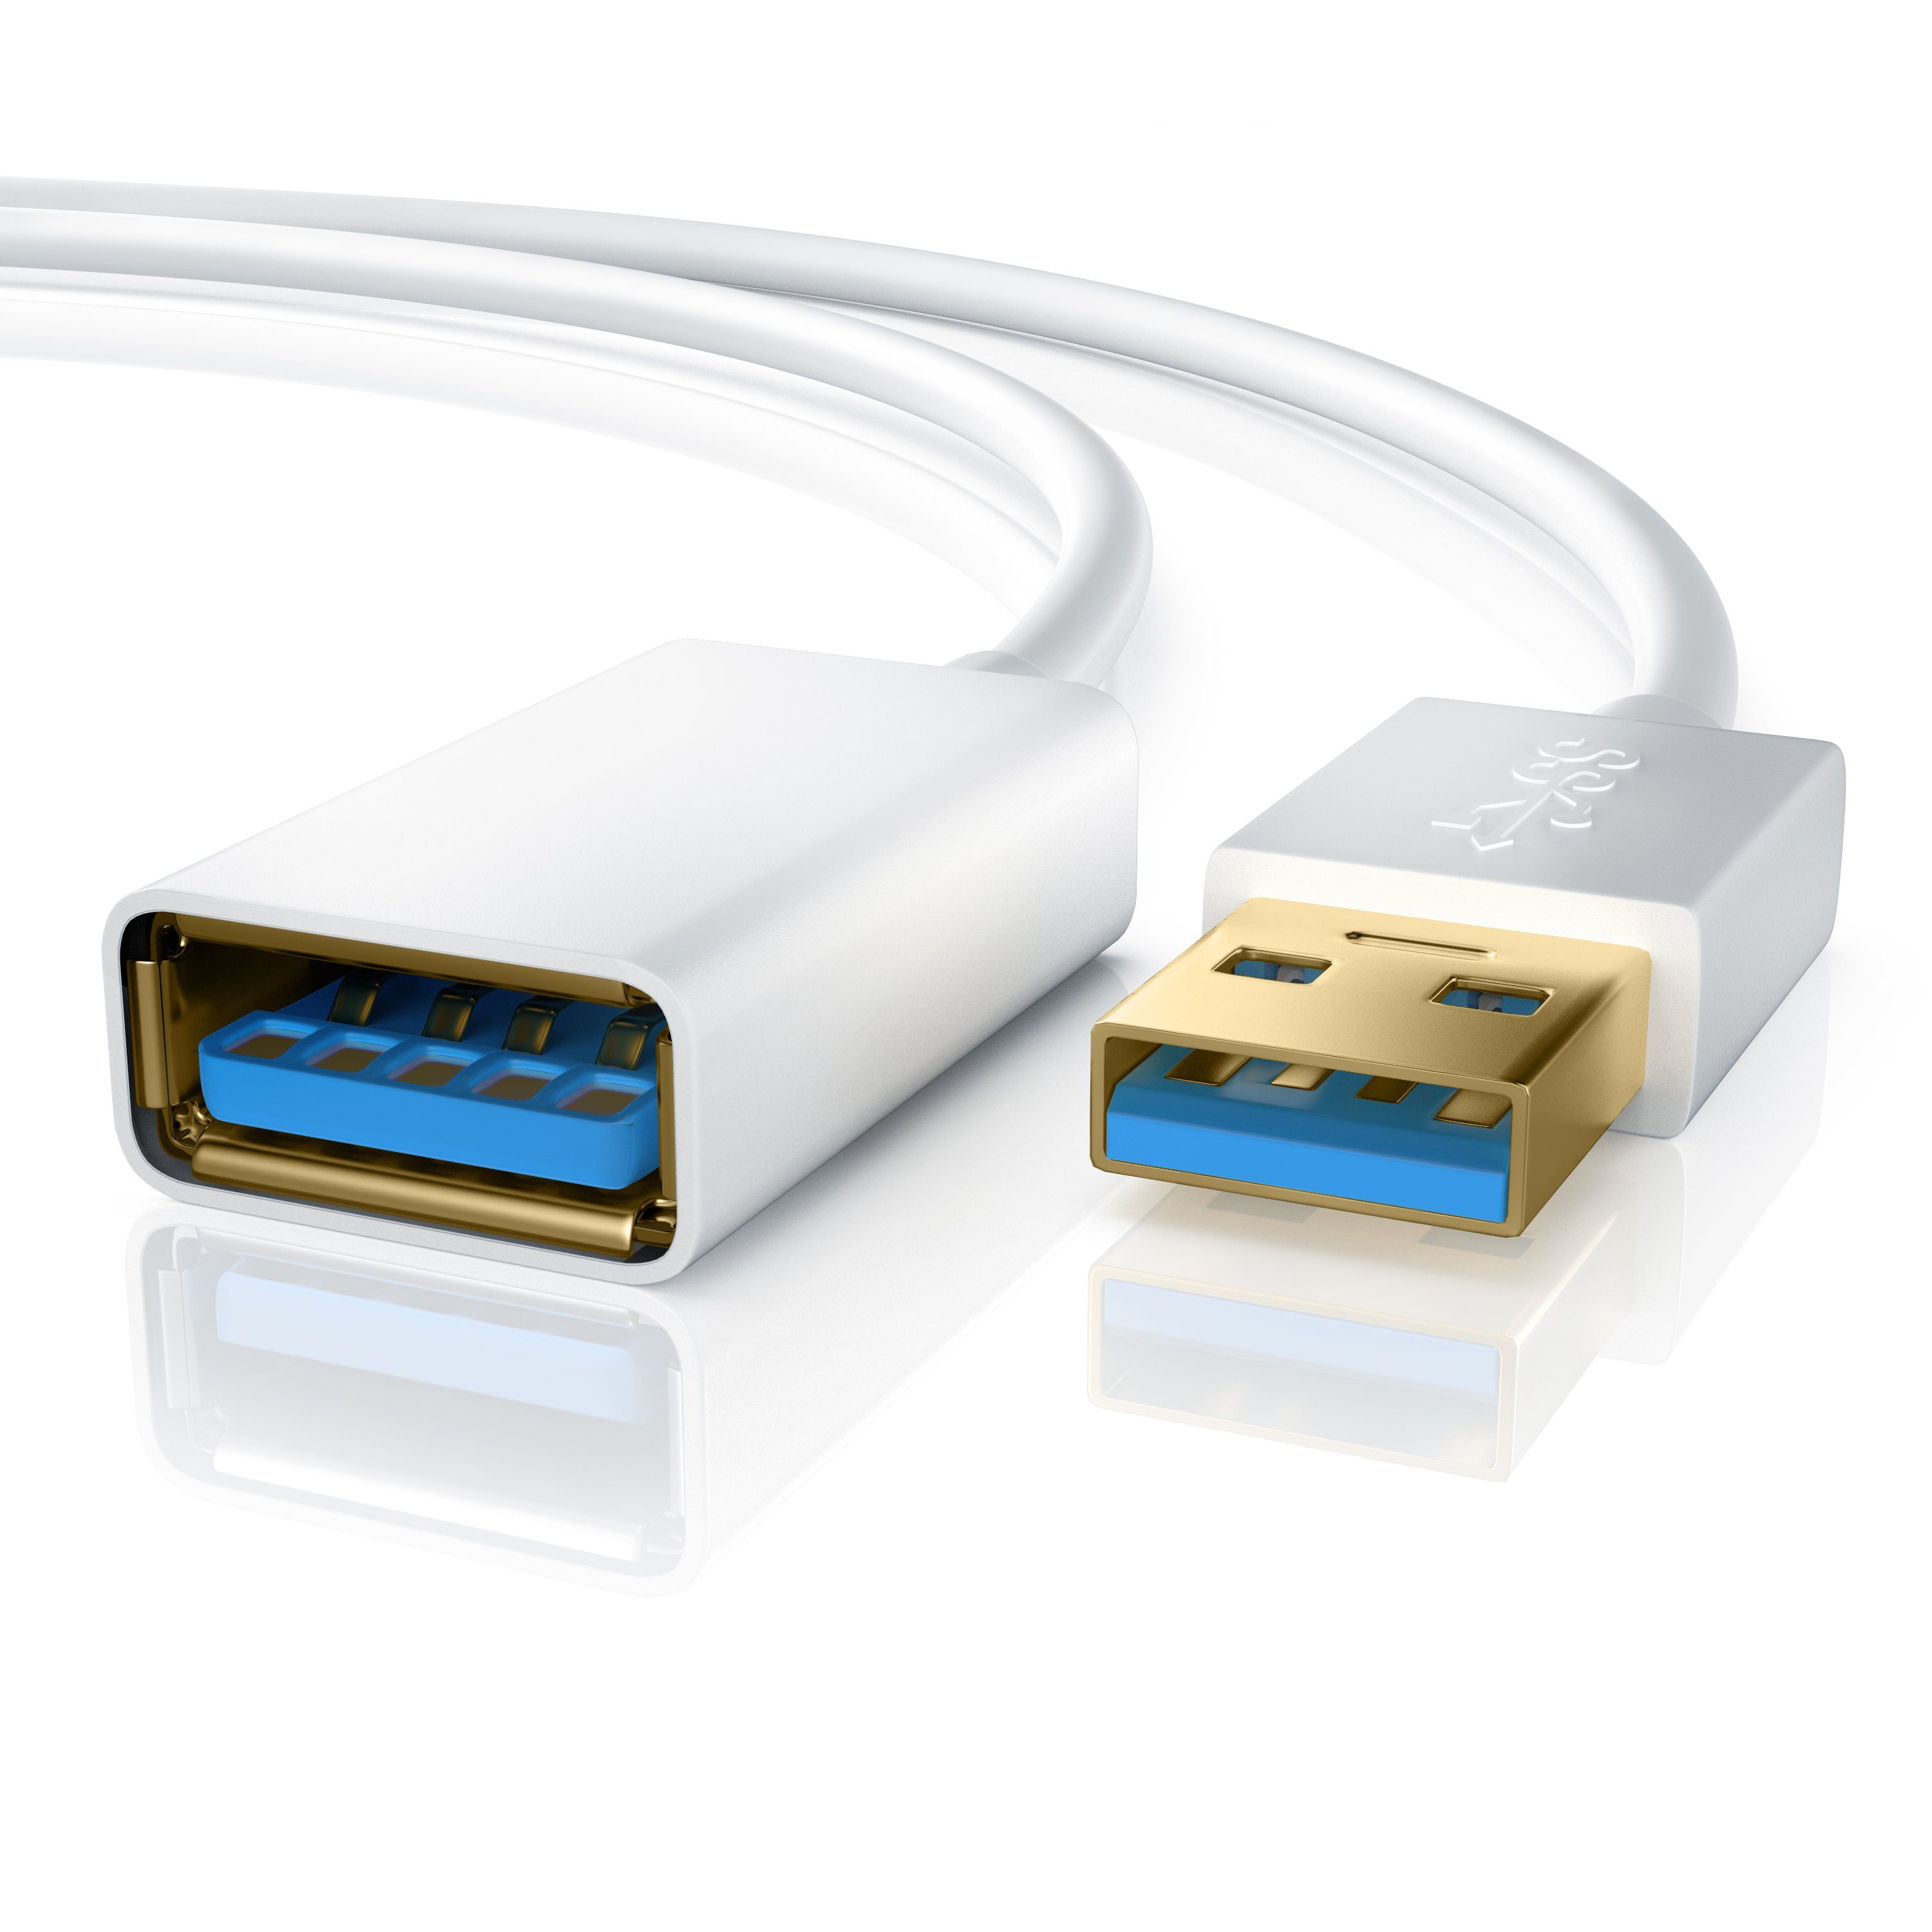 Primewire Verlängerungskabel, USB 3.0 Typ A (100 cm), USB3.0 Super Speed Repeater Kabel / Verlängerung bis zu 5Gb/s - 1m weiß